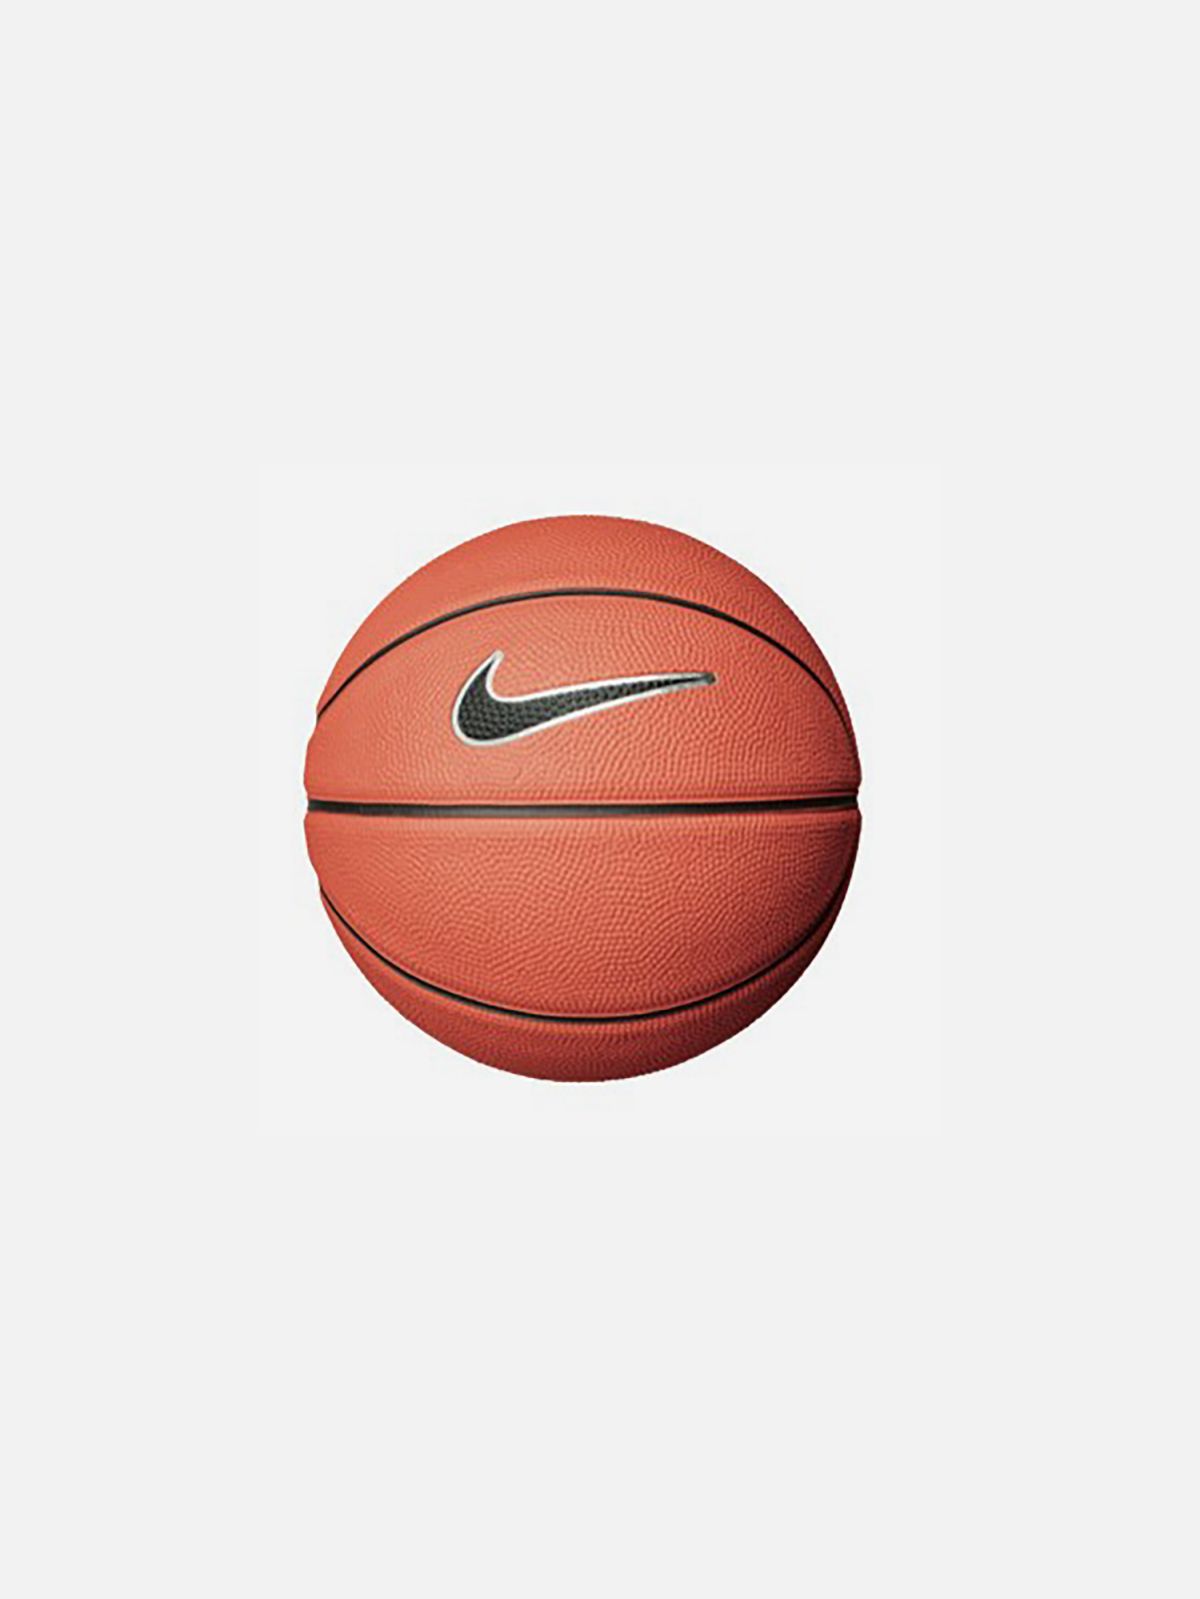  כדורסל עם לוגו / מידה 3 של NIKE